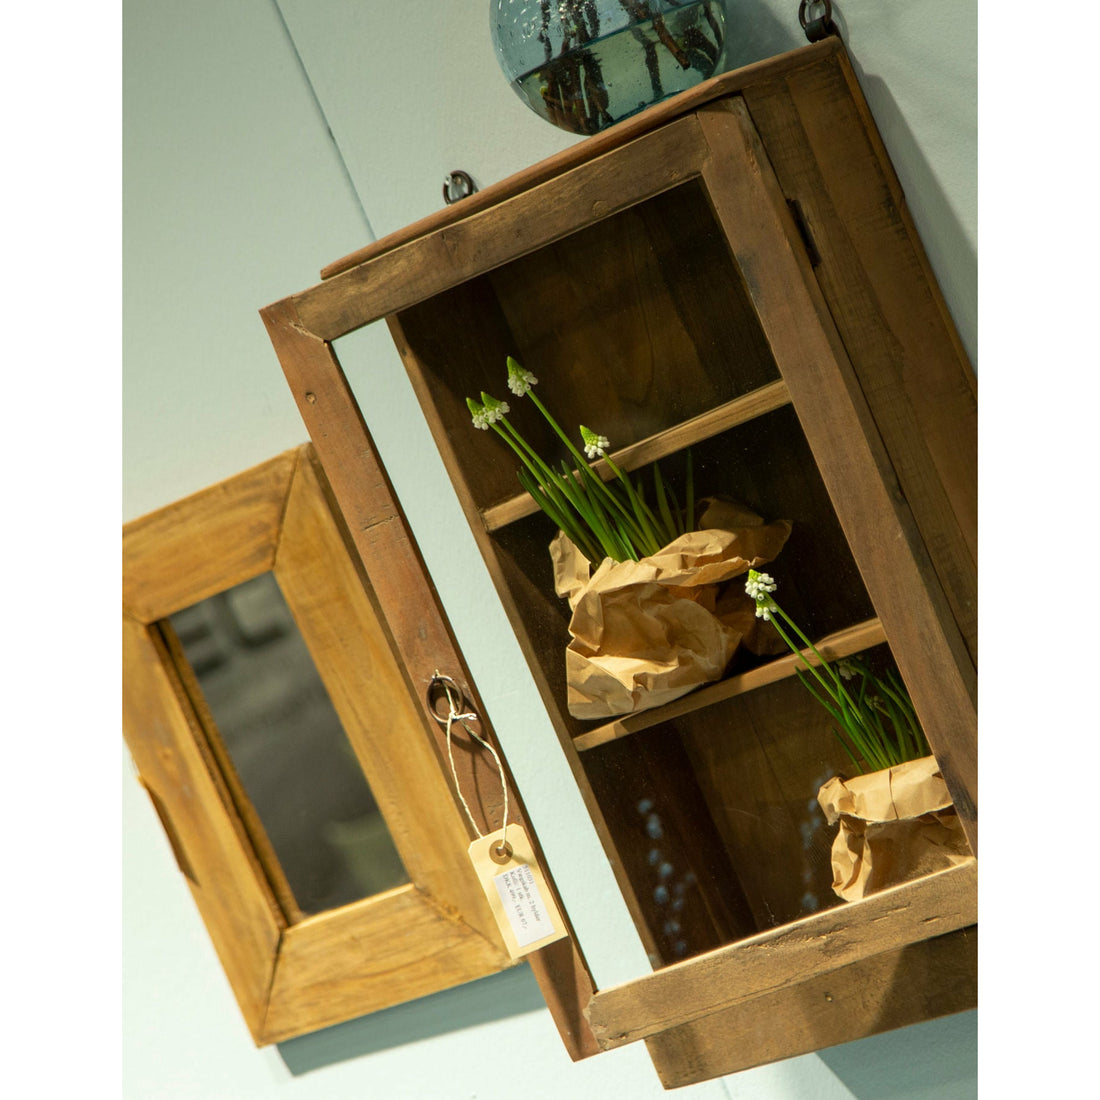 Sjælsø Nordic Wooden cabinet with 2 shelves and glass door